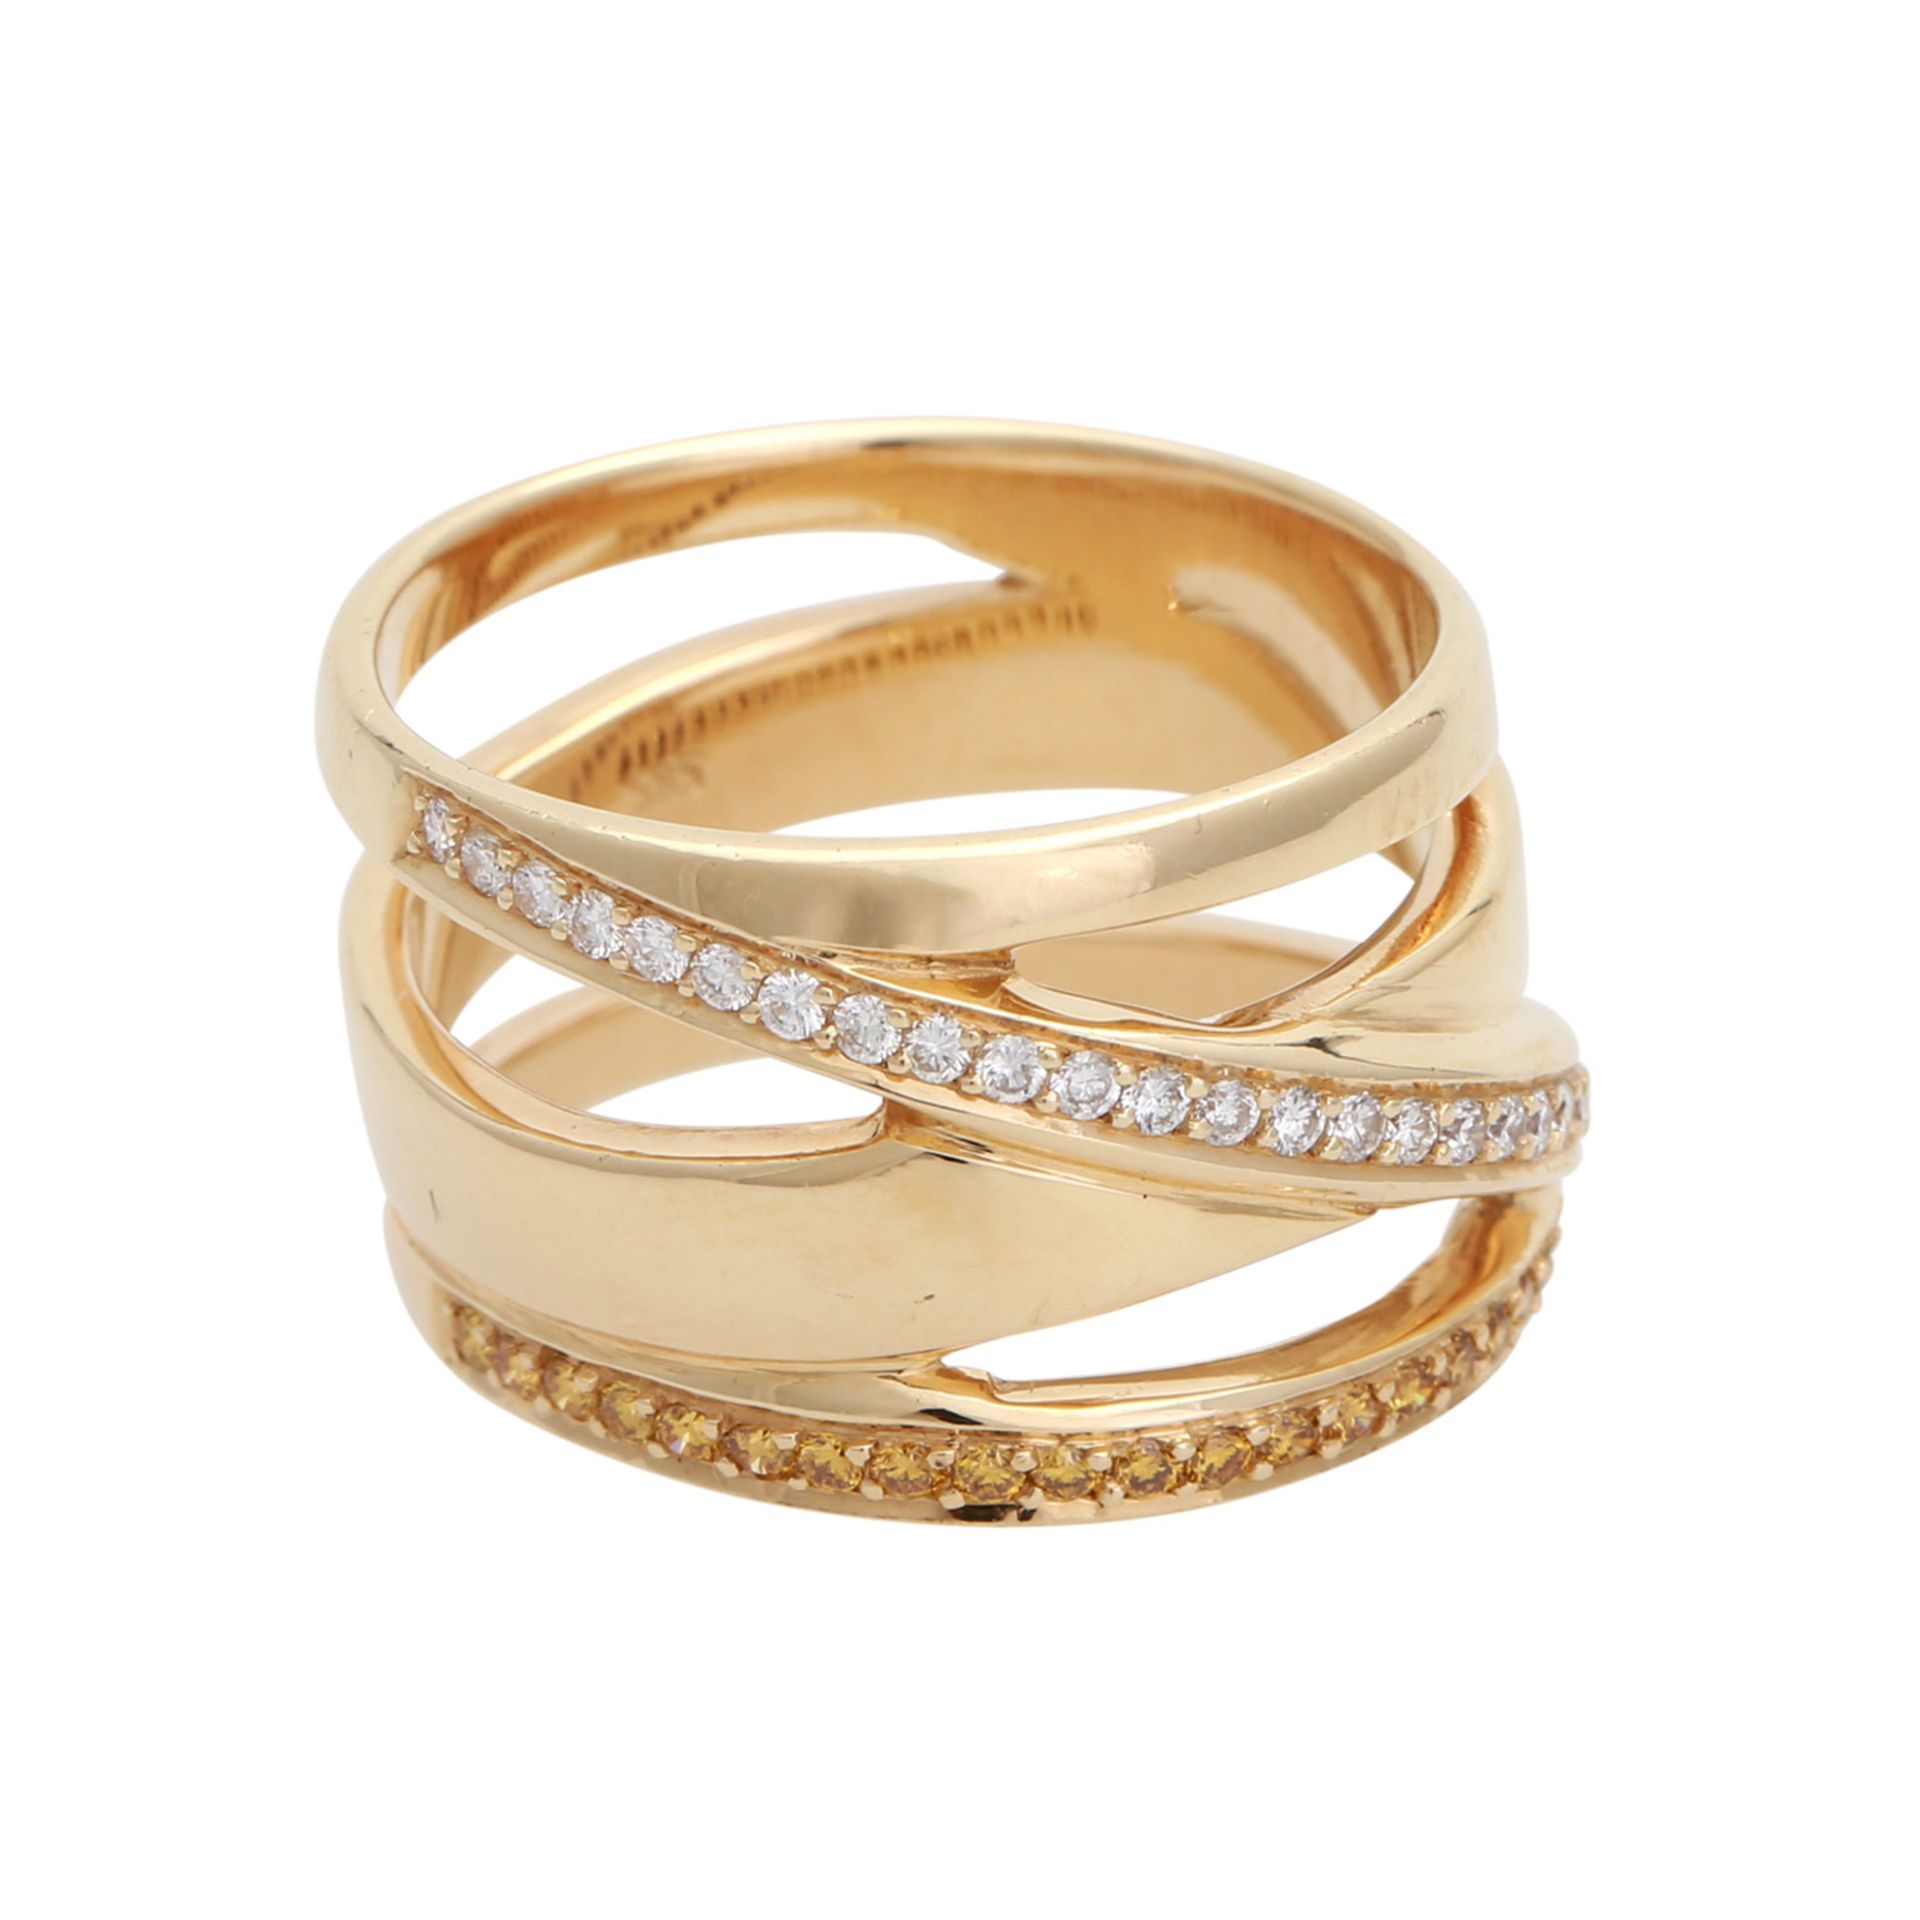 Ring mit 28 weißen und 23 gelben Brillanten, zus. ca. 0,51 ct, guter Farb- und Reinheitsgrad,